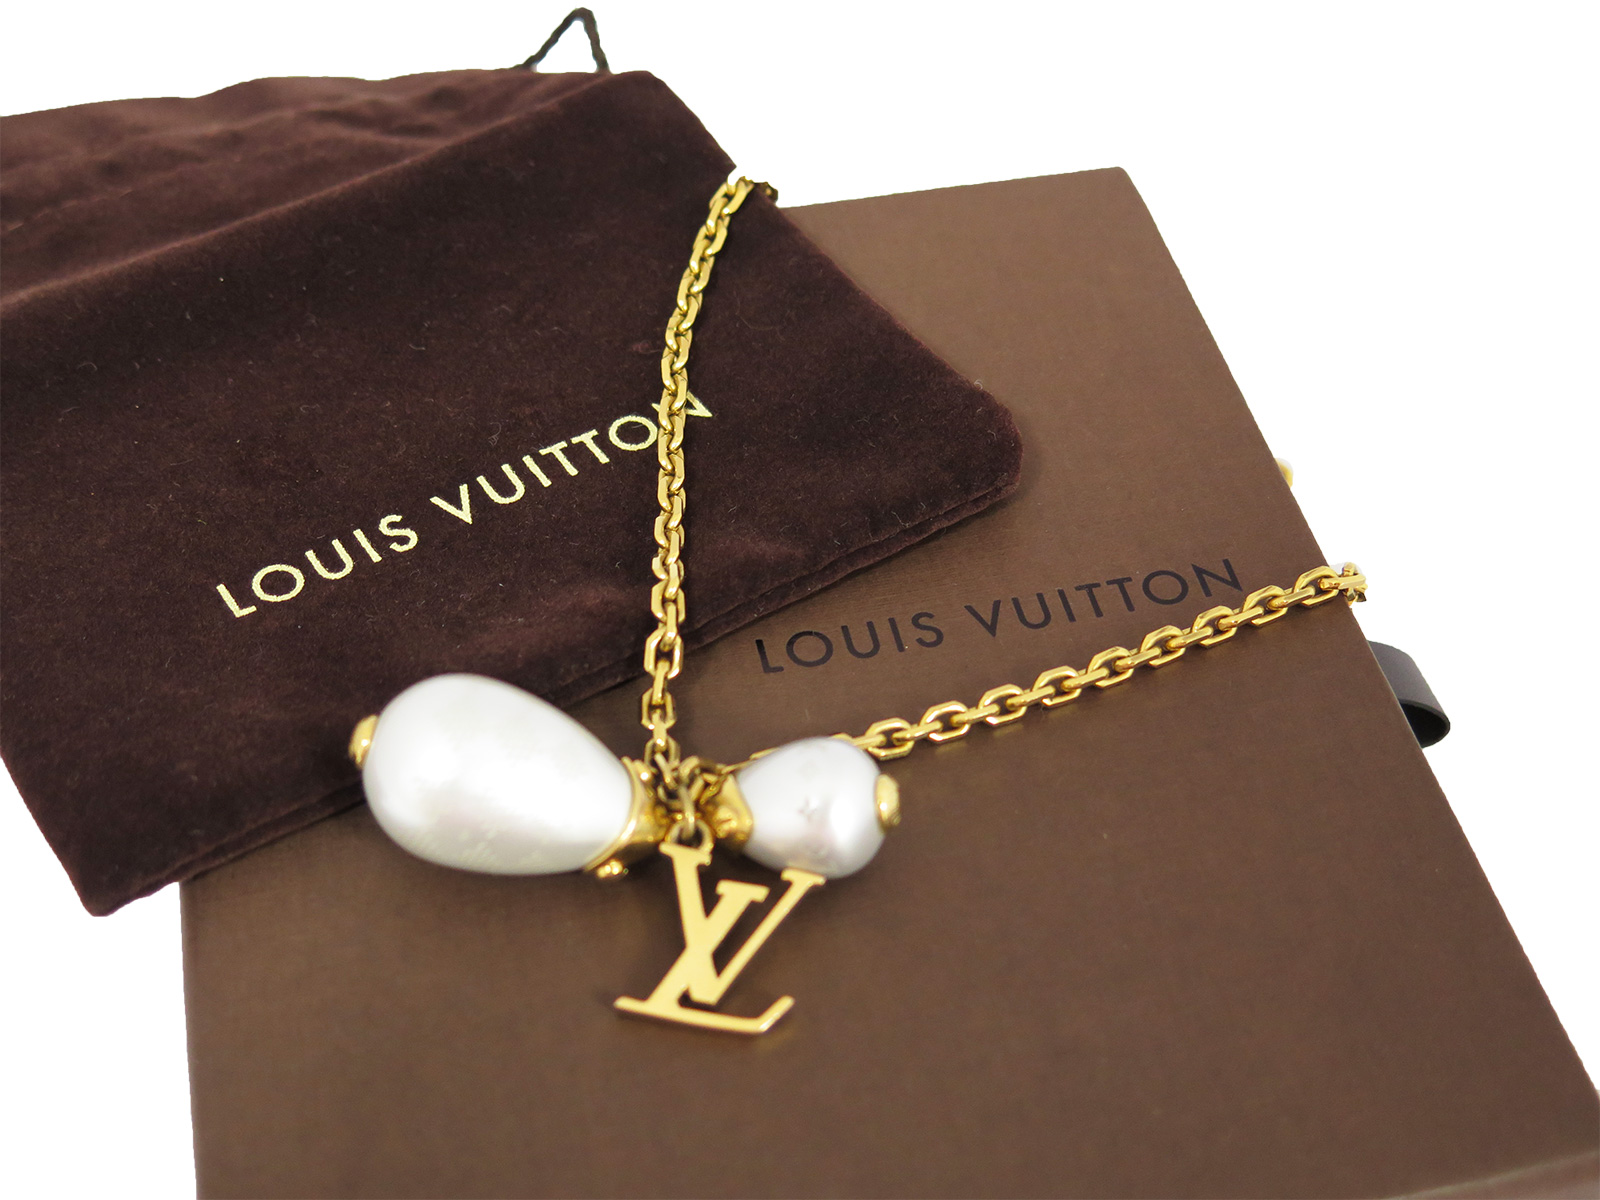 Auth Louis Vuitton Damier Perle Chain Necklace Goldtone Faux Pearls - e14226 | eBay